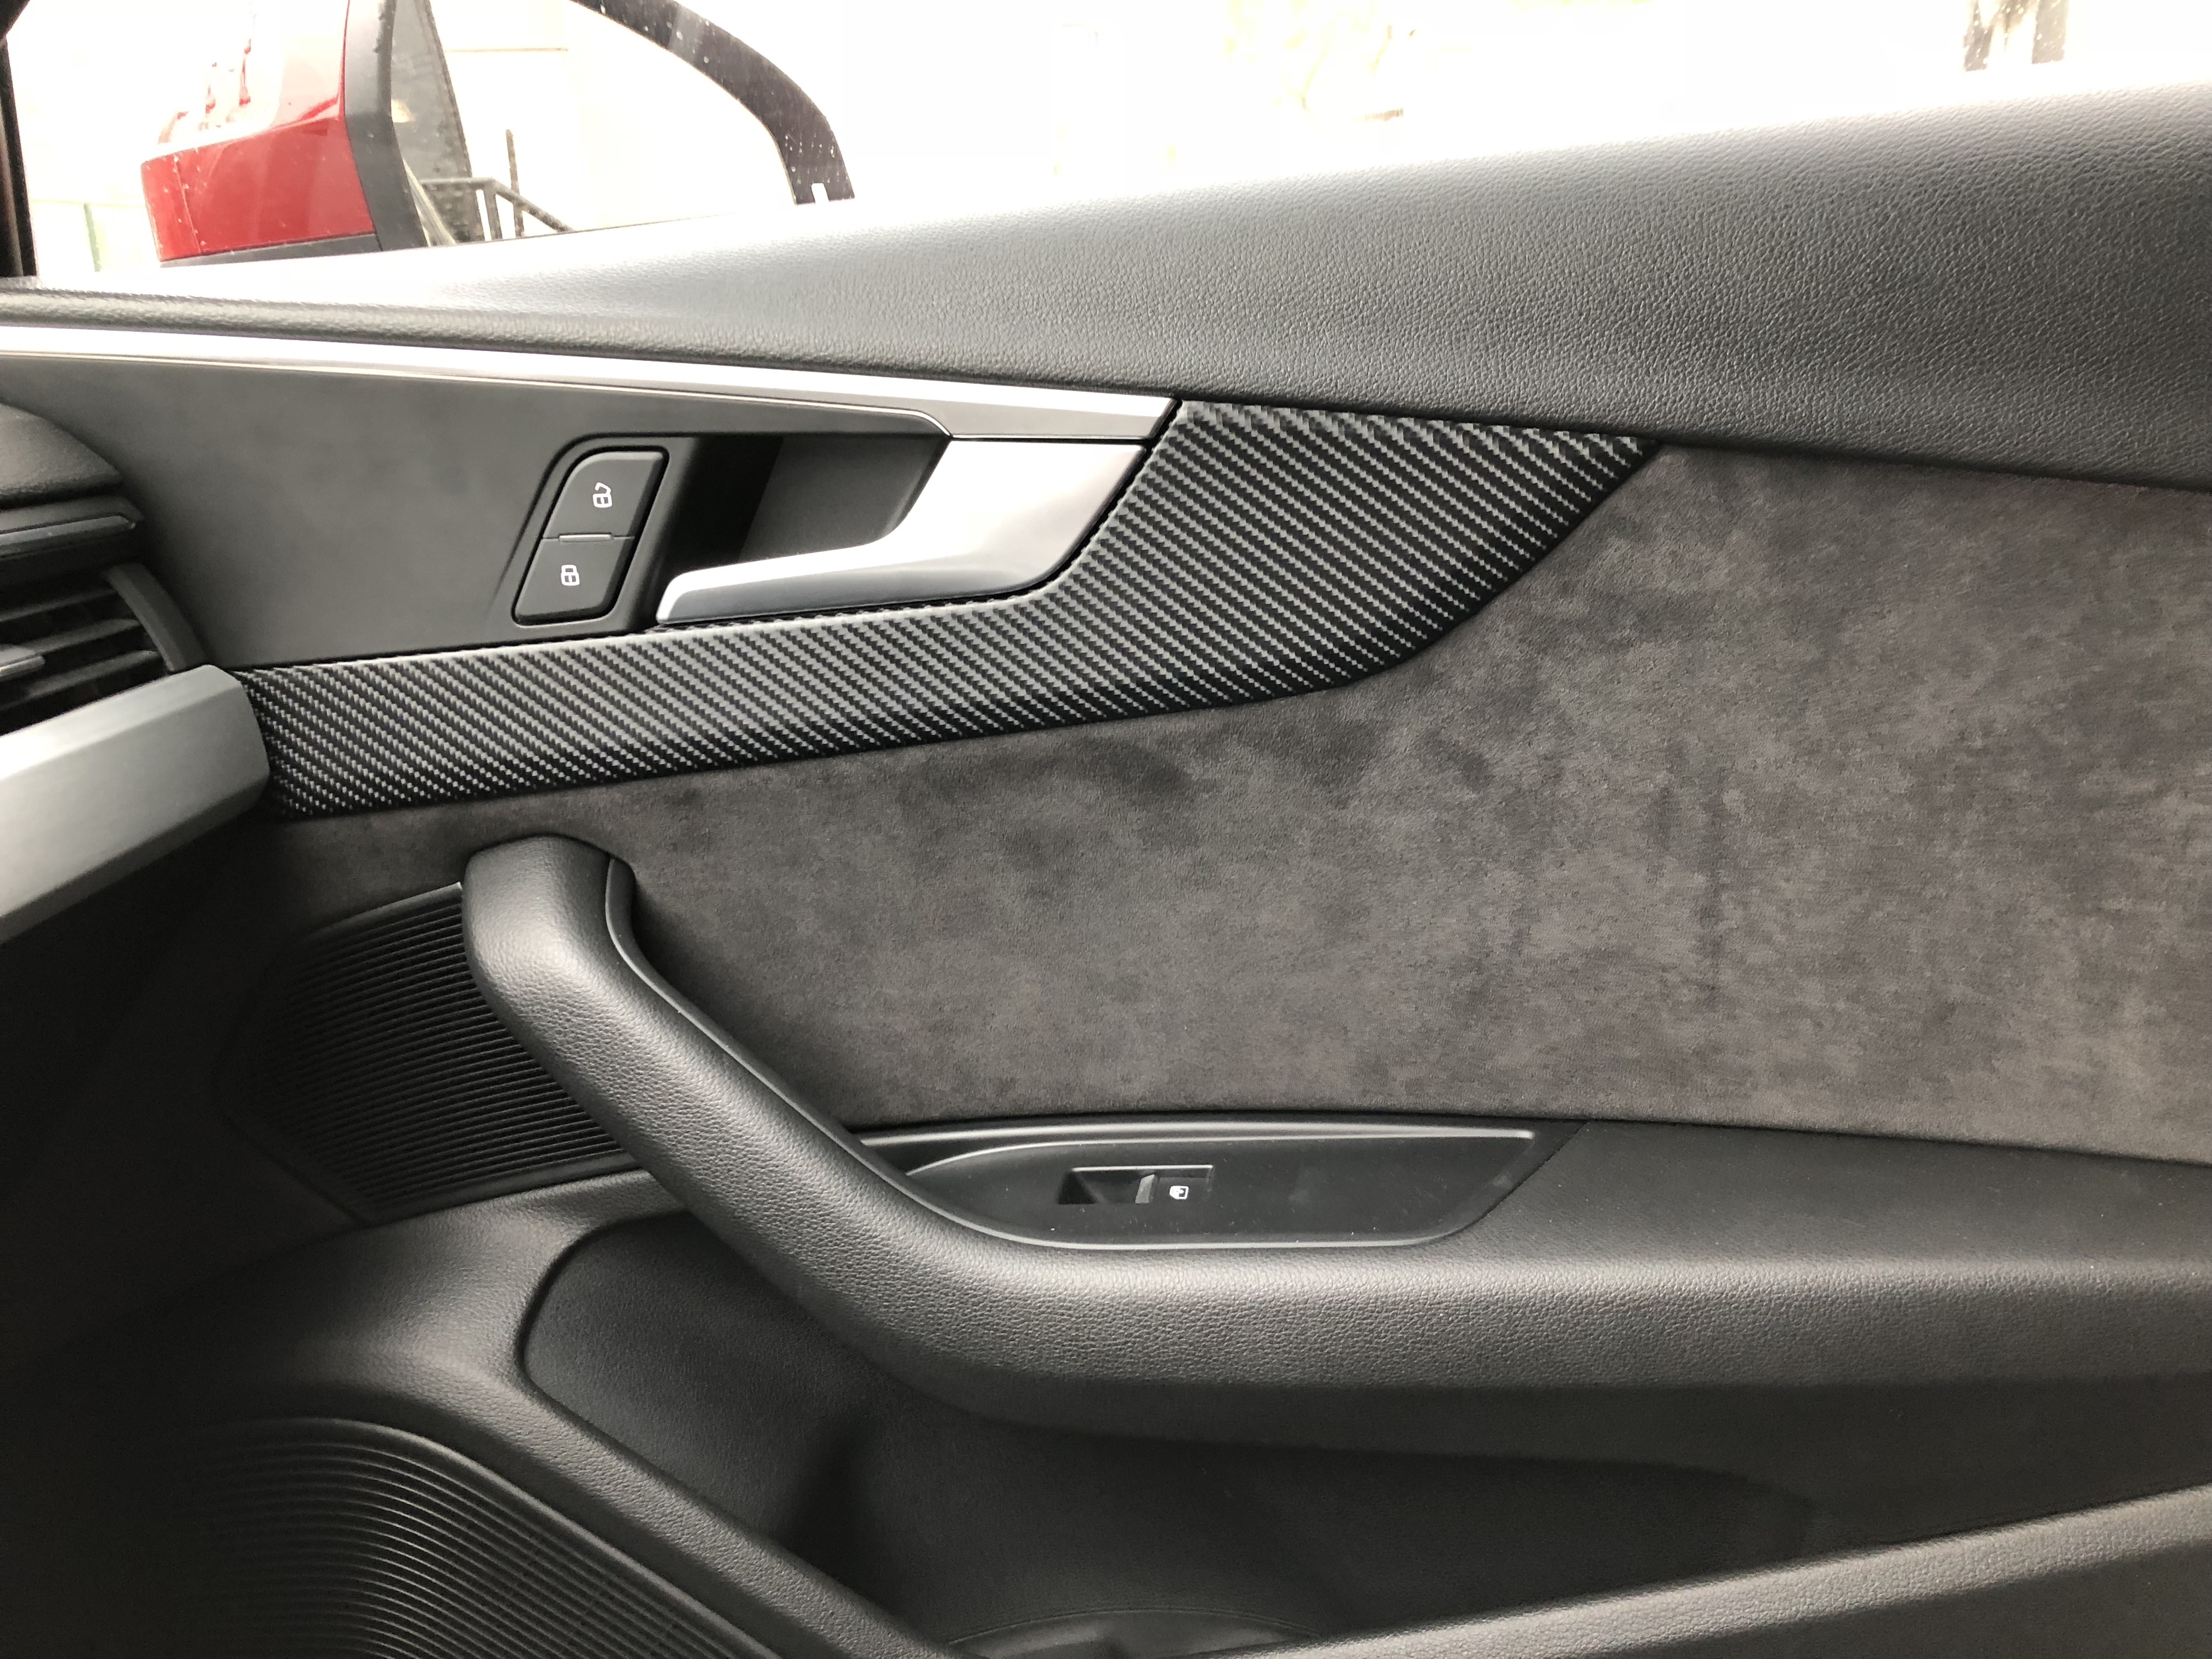 Stubble 4Pcs Carbon Fiber ABS Car Inner Door Window Armrest Cover Trim Fit for Audi A4 B8 2008 2009 2010 2011 2012 2013 2014 2015